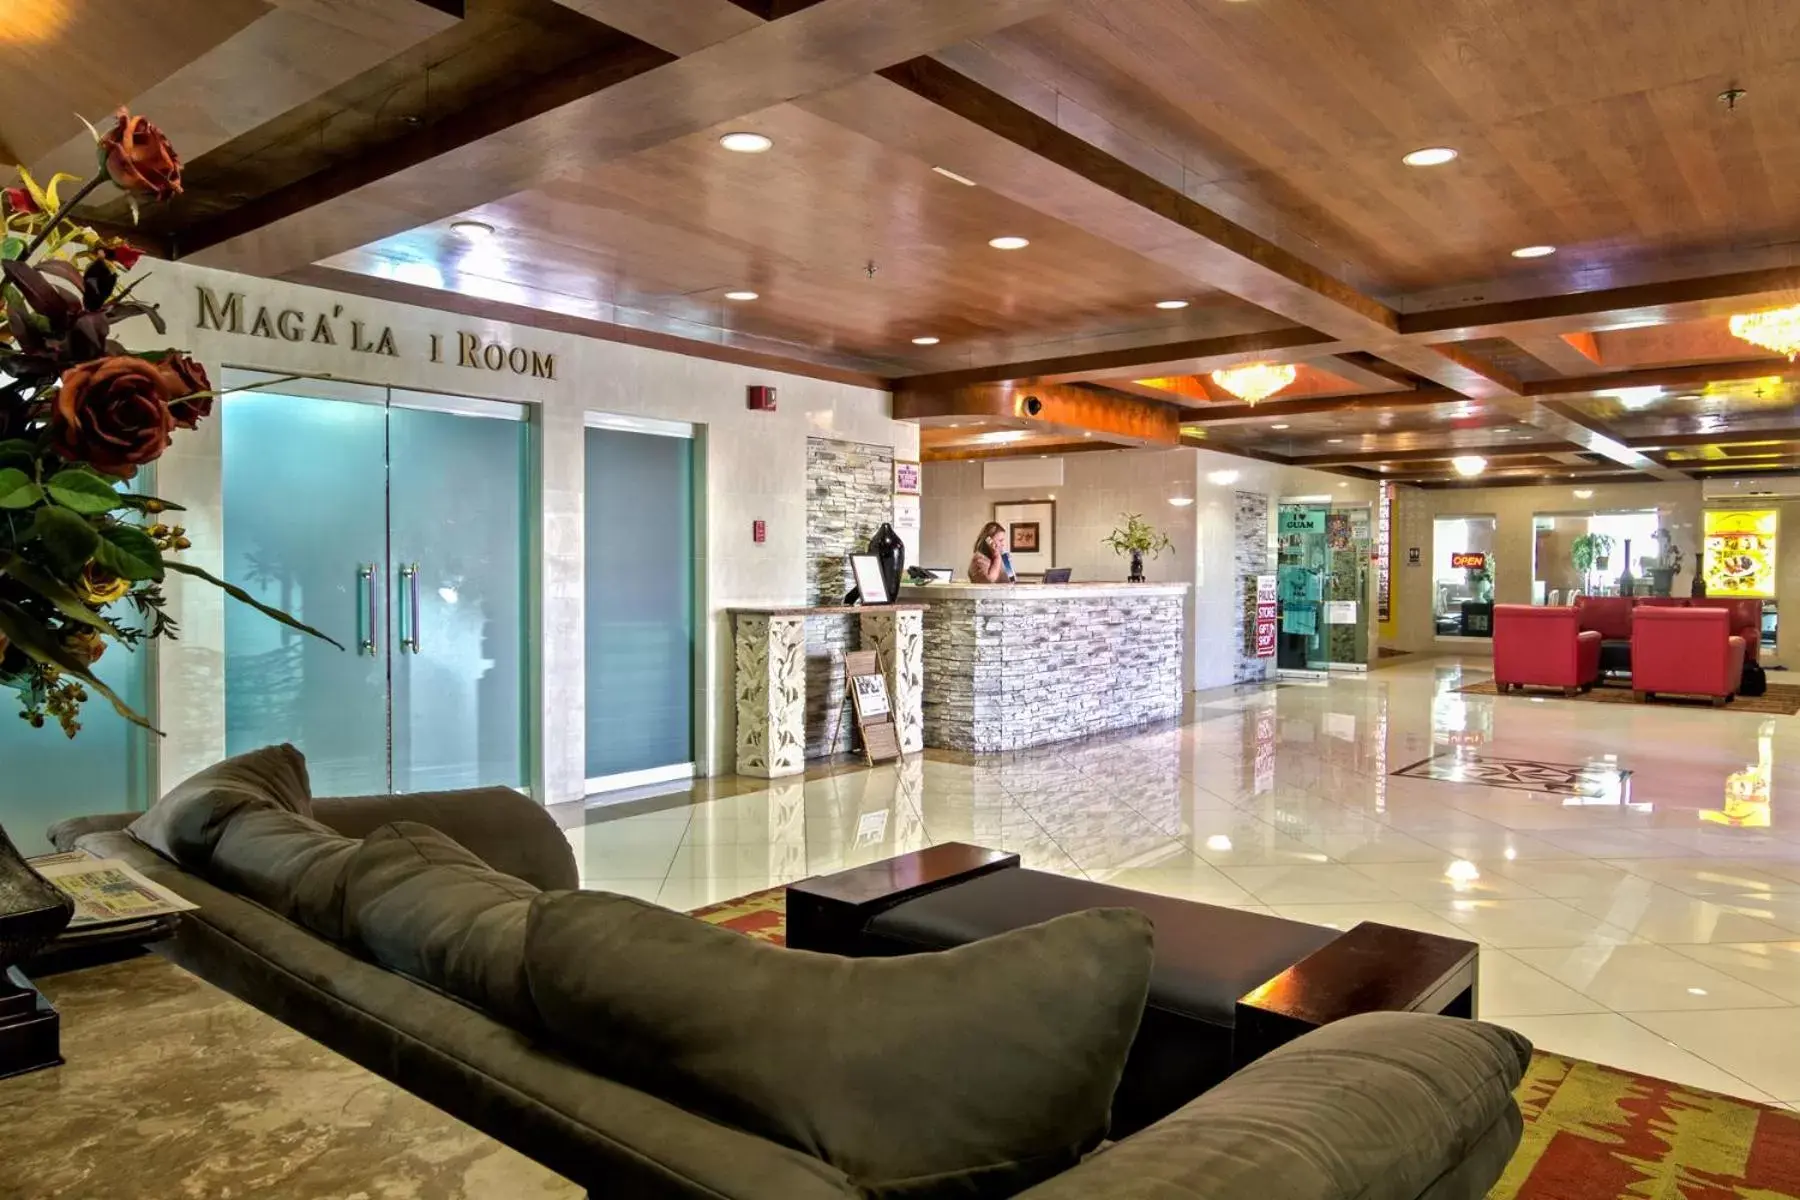 Lobby or reception, Lobby/Reception in Wyndham Garden Guam